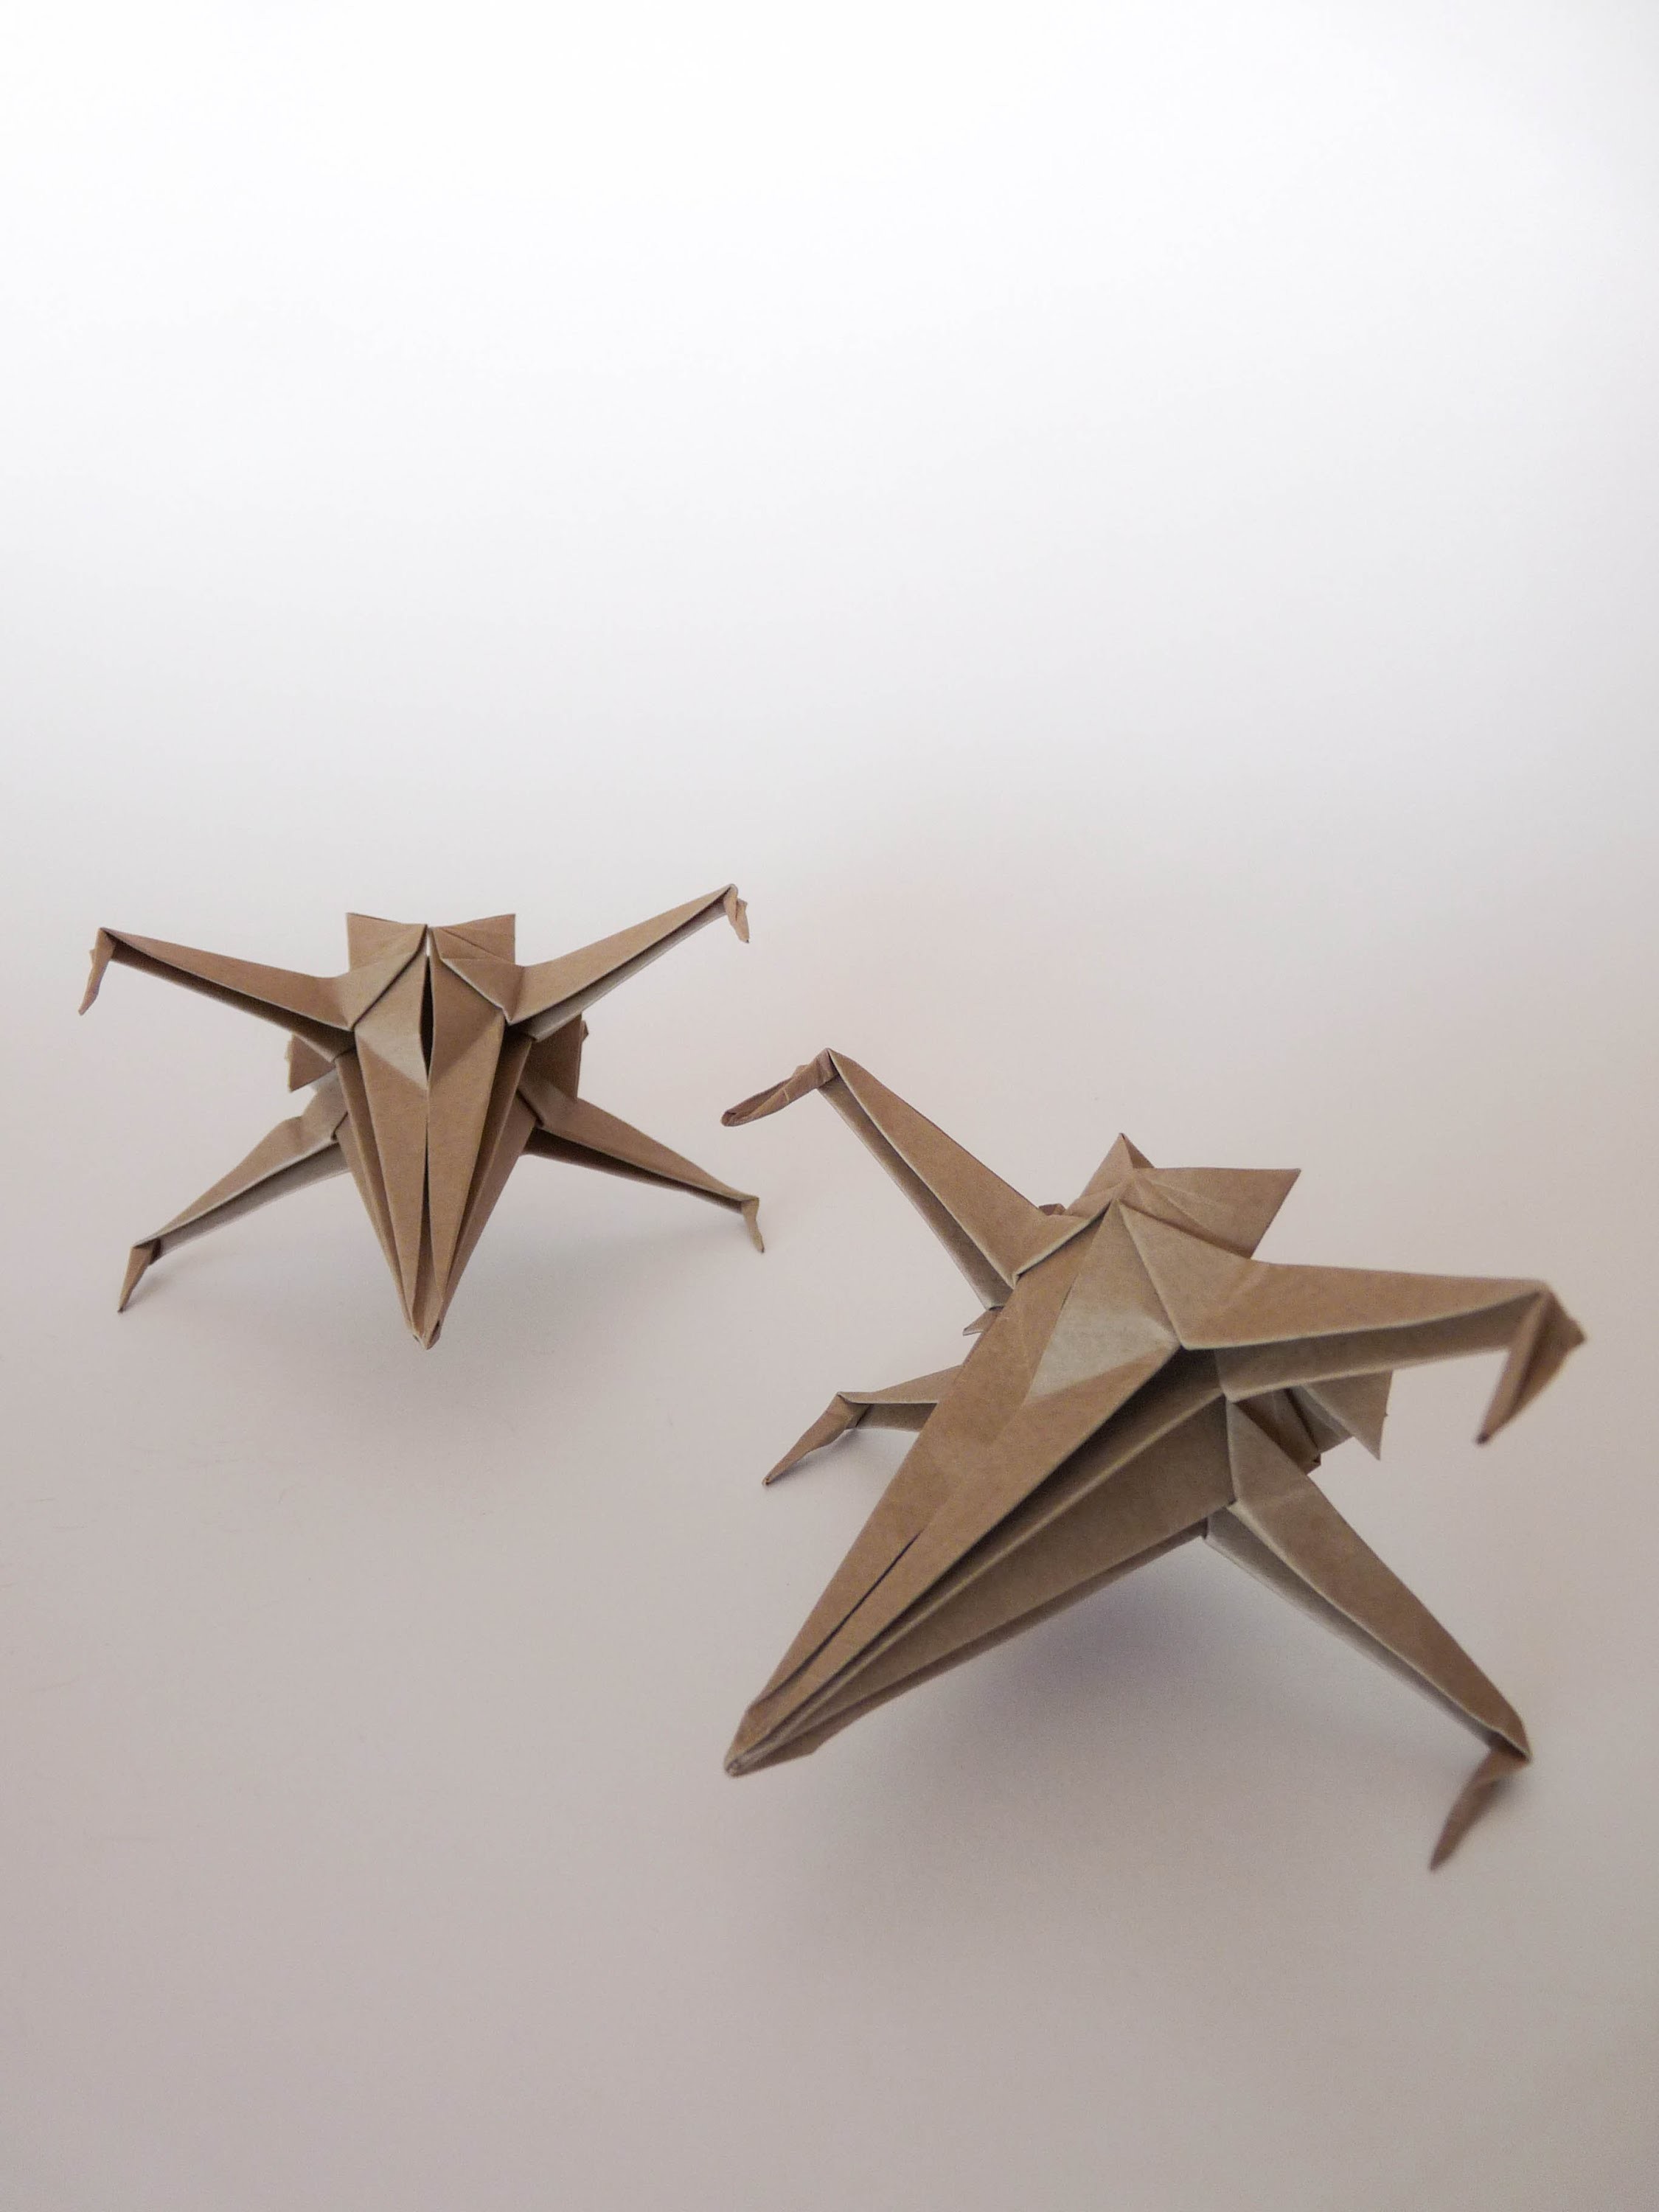 Como hacer una nave de star wars de origami (origami X-wing)